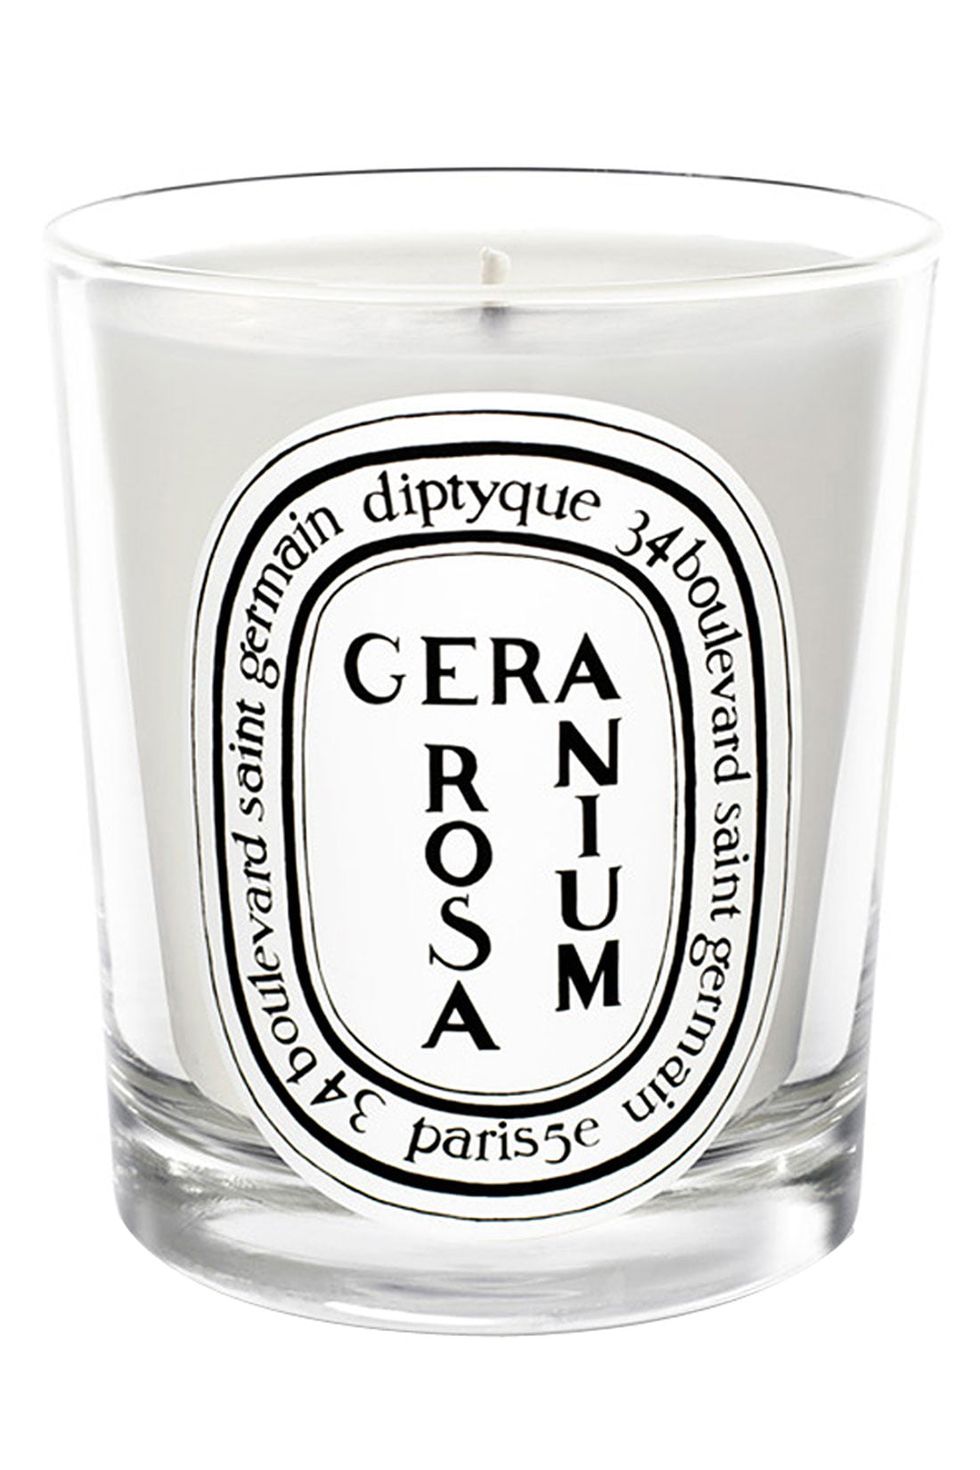 Geranium Rosa/Rose Geranium Scented Candle